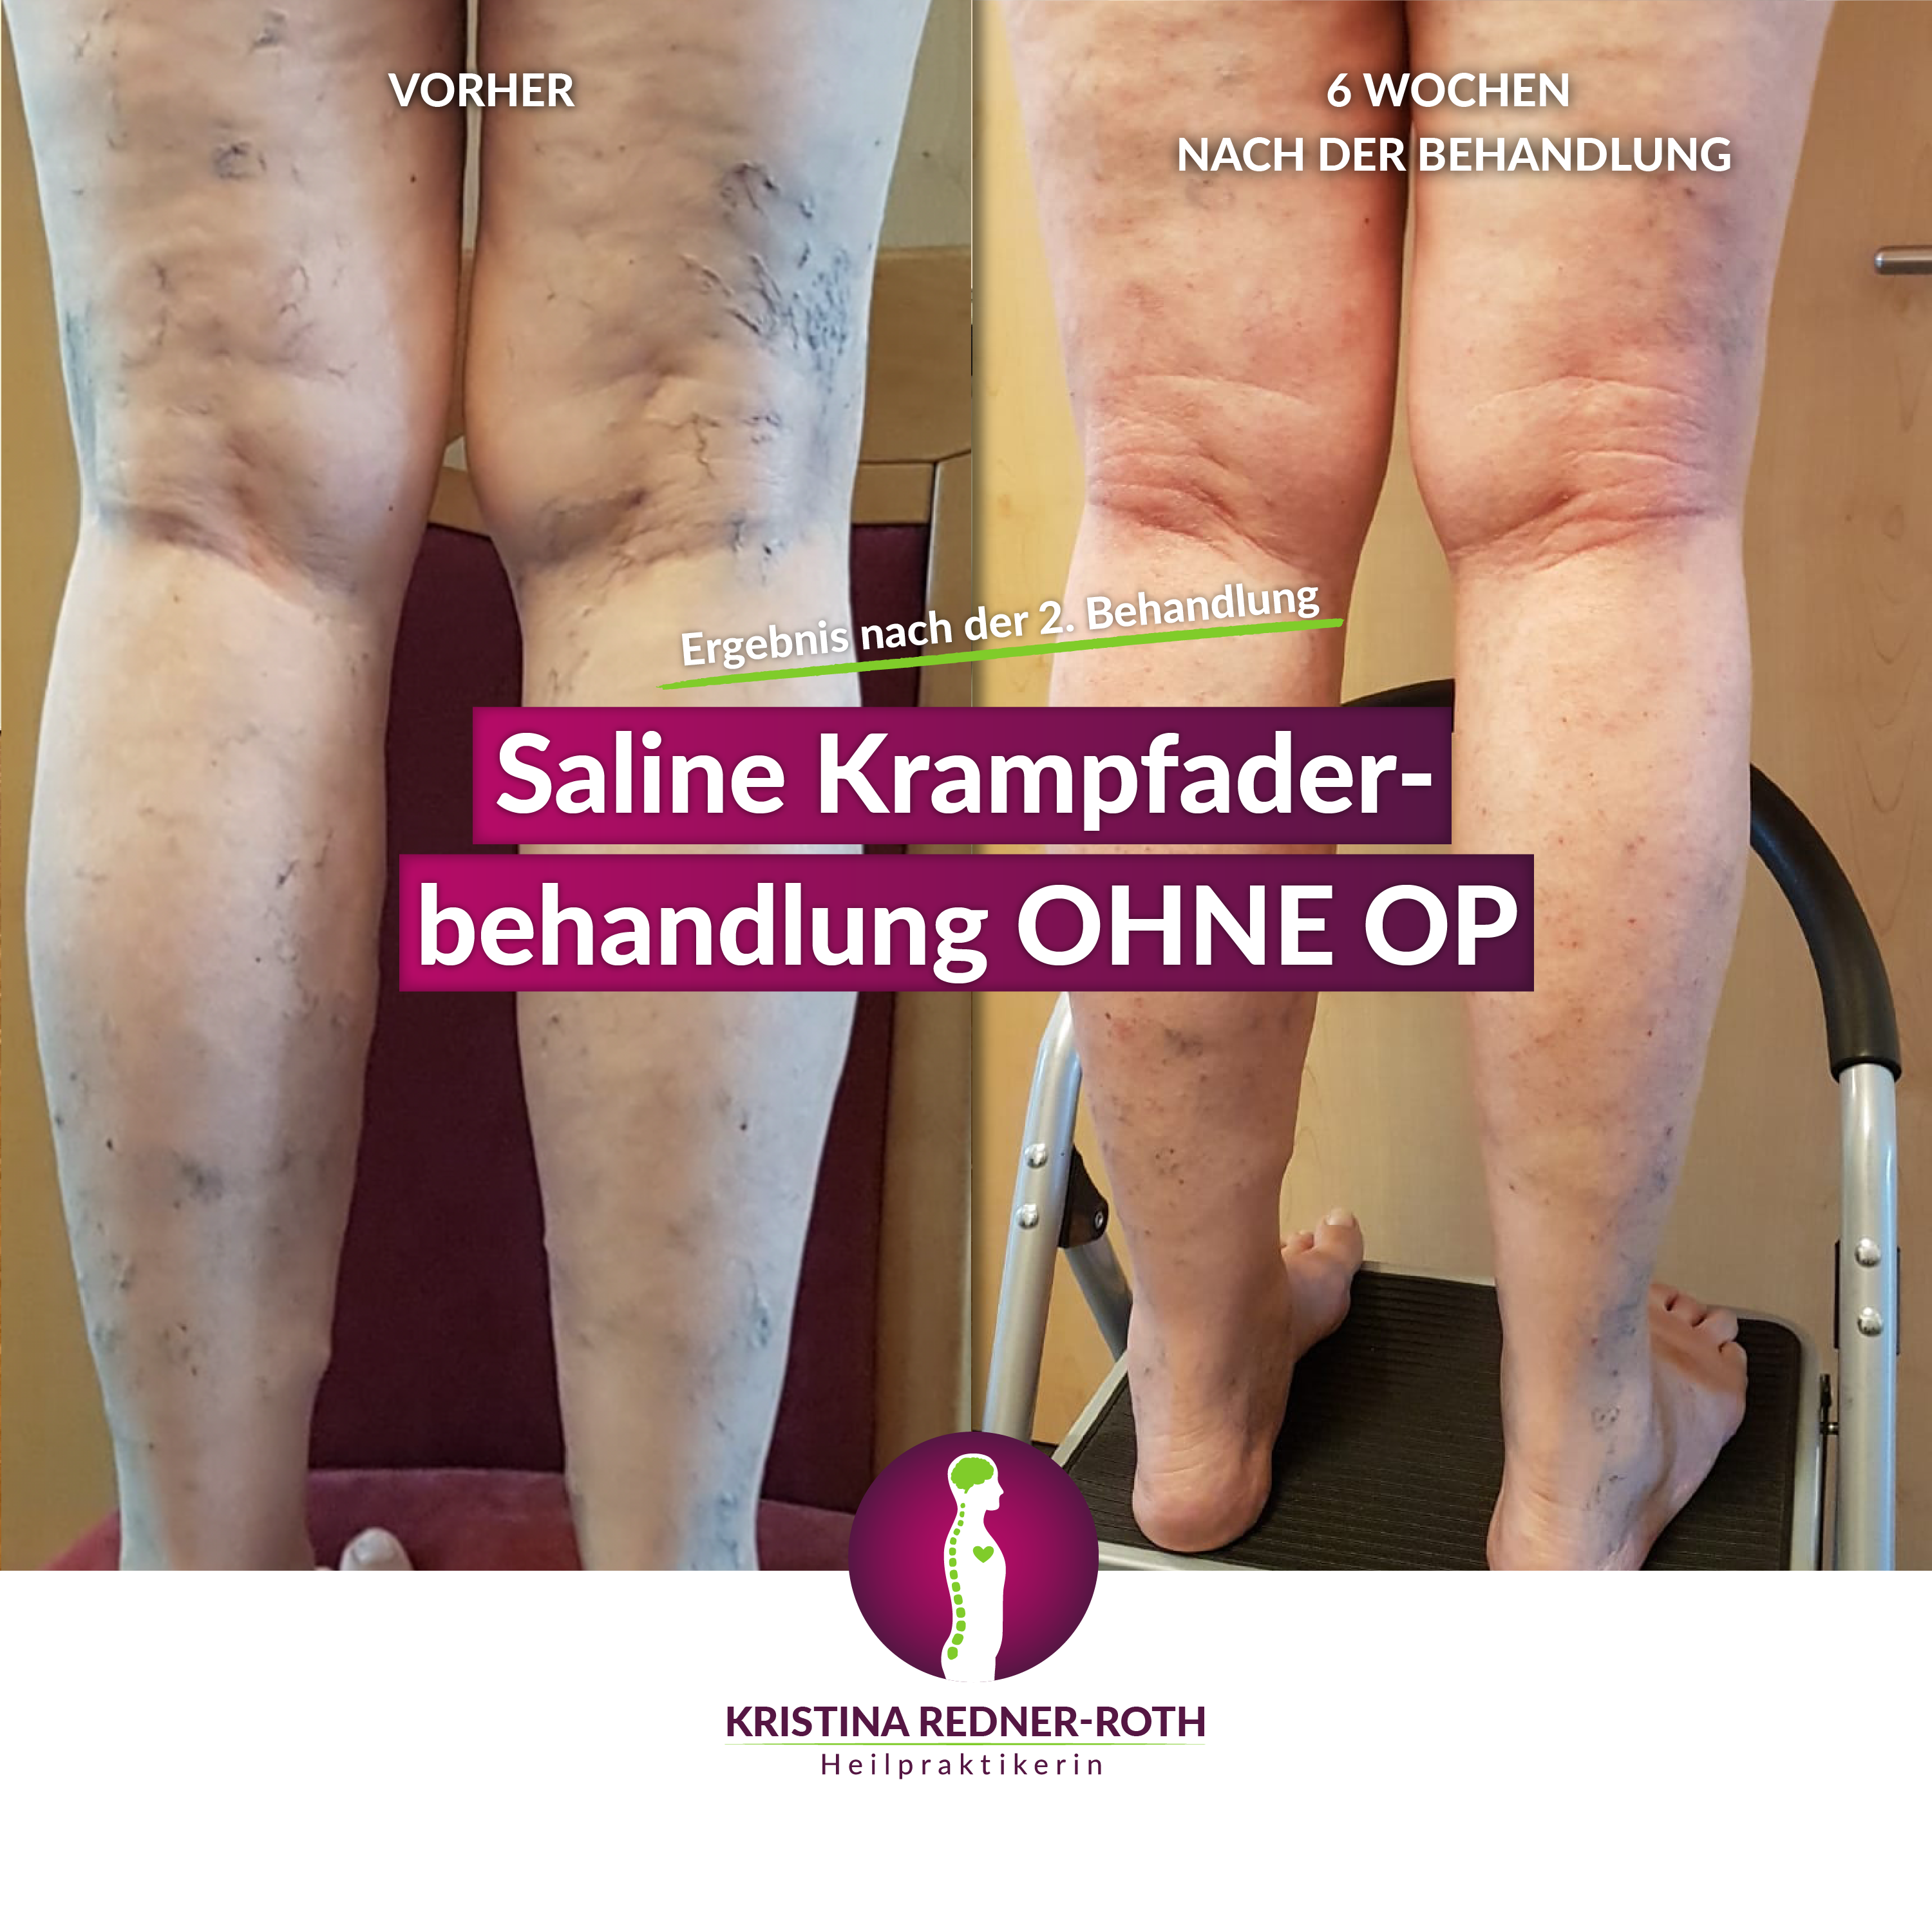 Bild eines Beins vor und nach der Krampfaderbehandlung. Vorher sind Krampfadern deutlich erkennbar, sechs Wochen nach der 2. Behandlung nicht mehr.